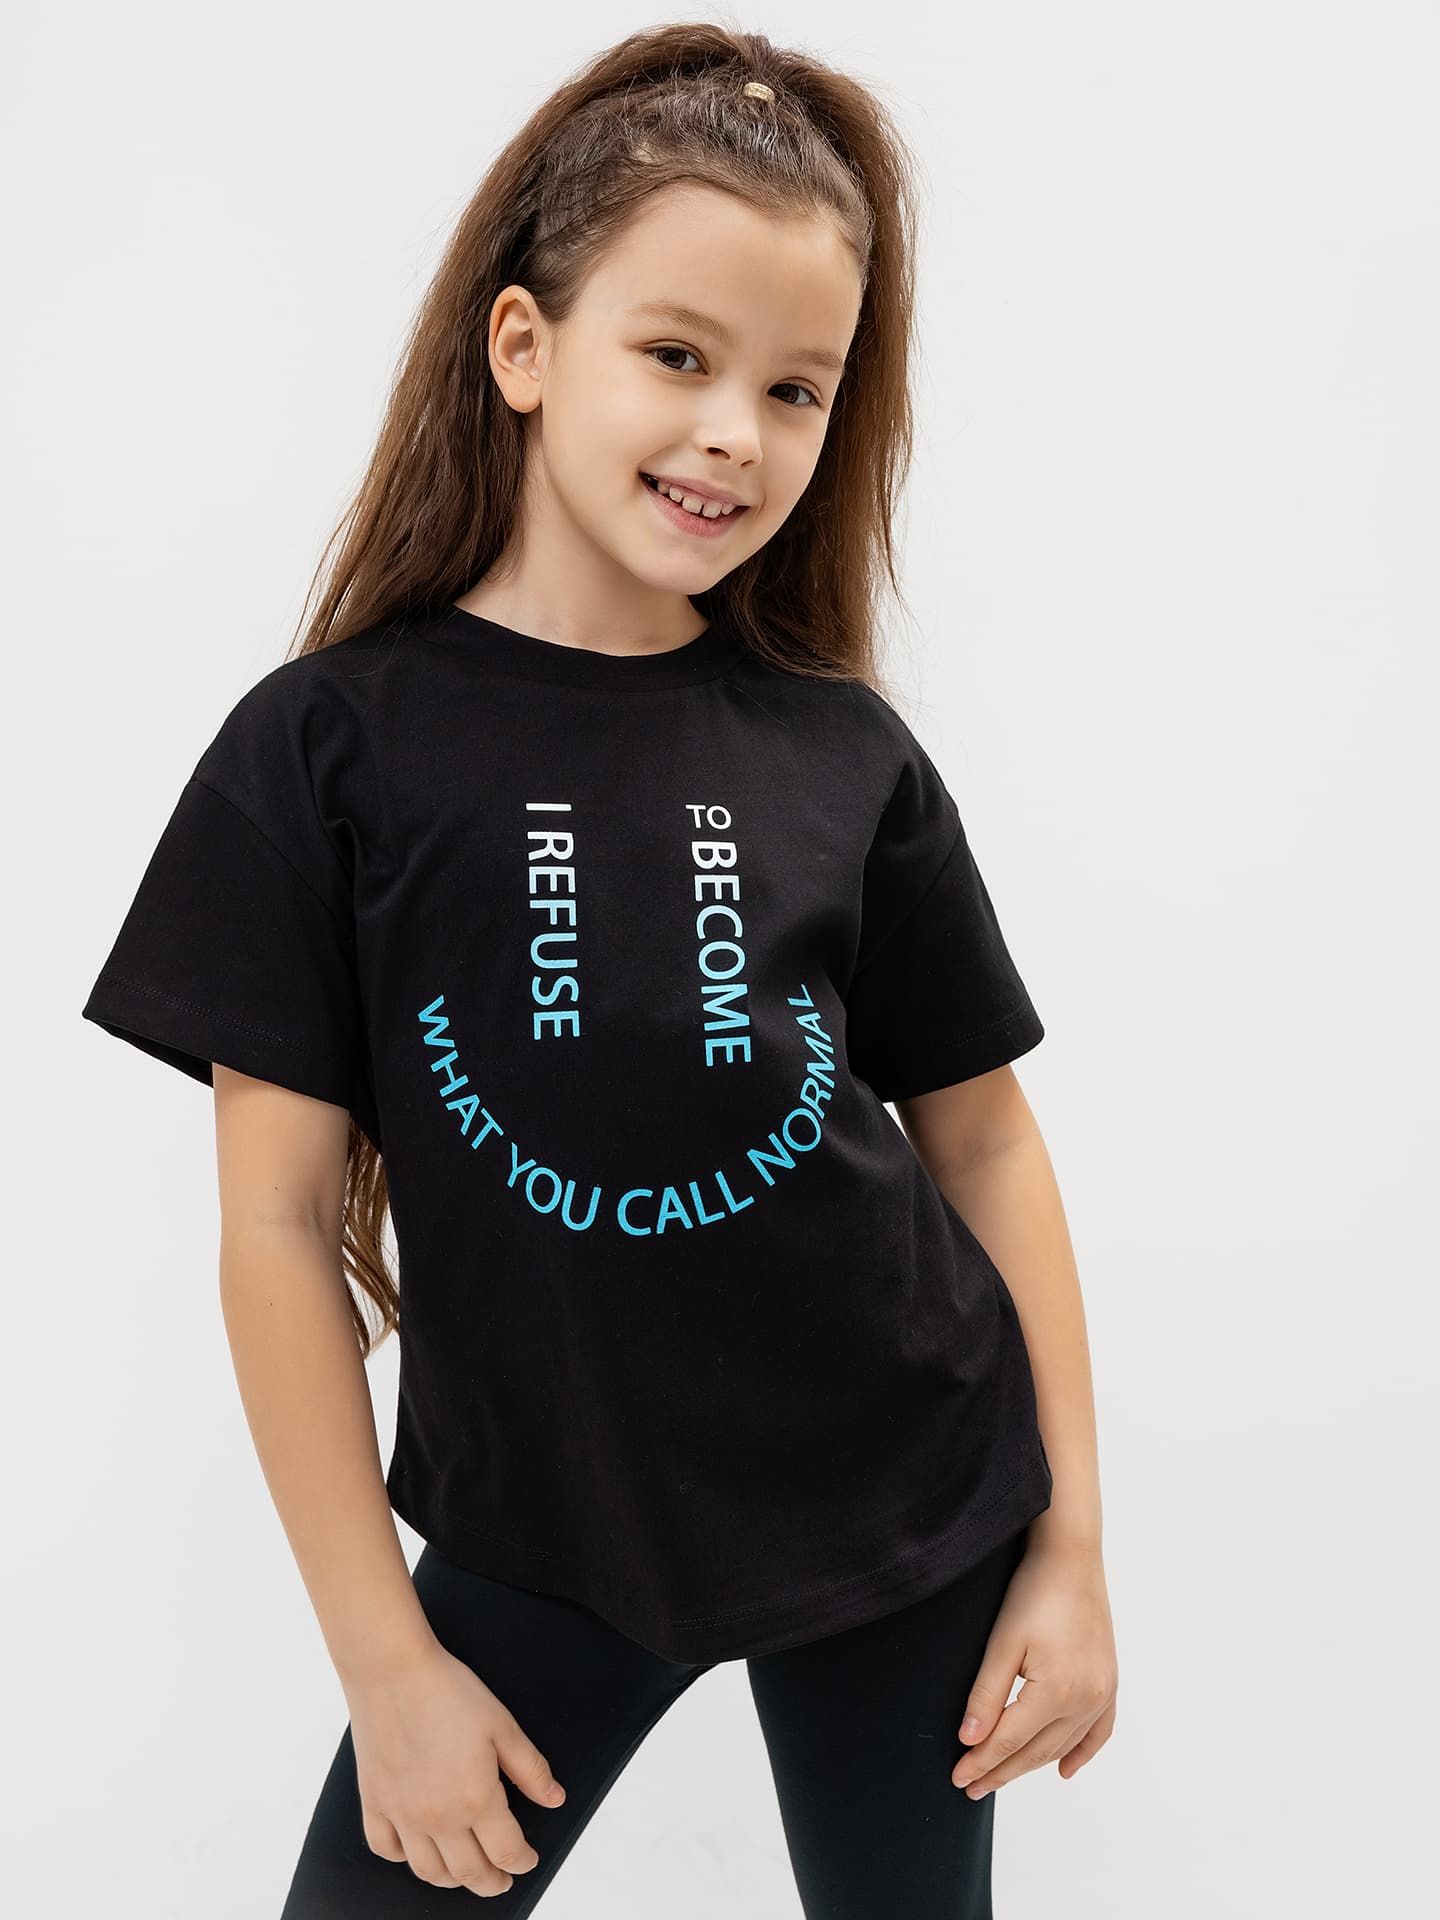 Хлопковая футболка для девочки в черном цвете с печатью